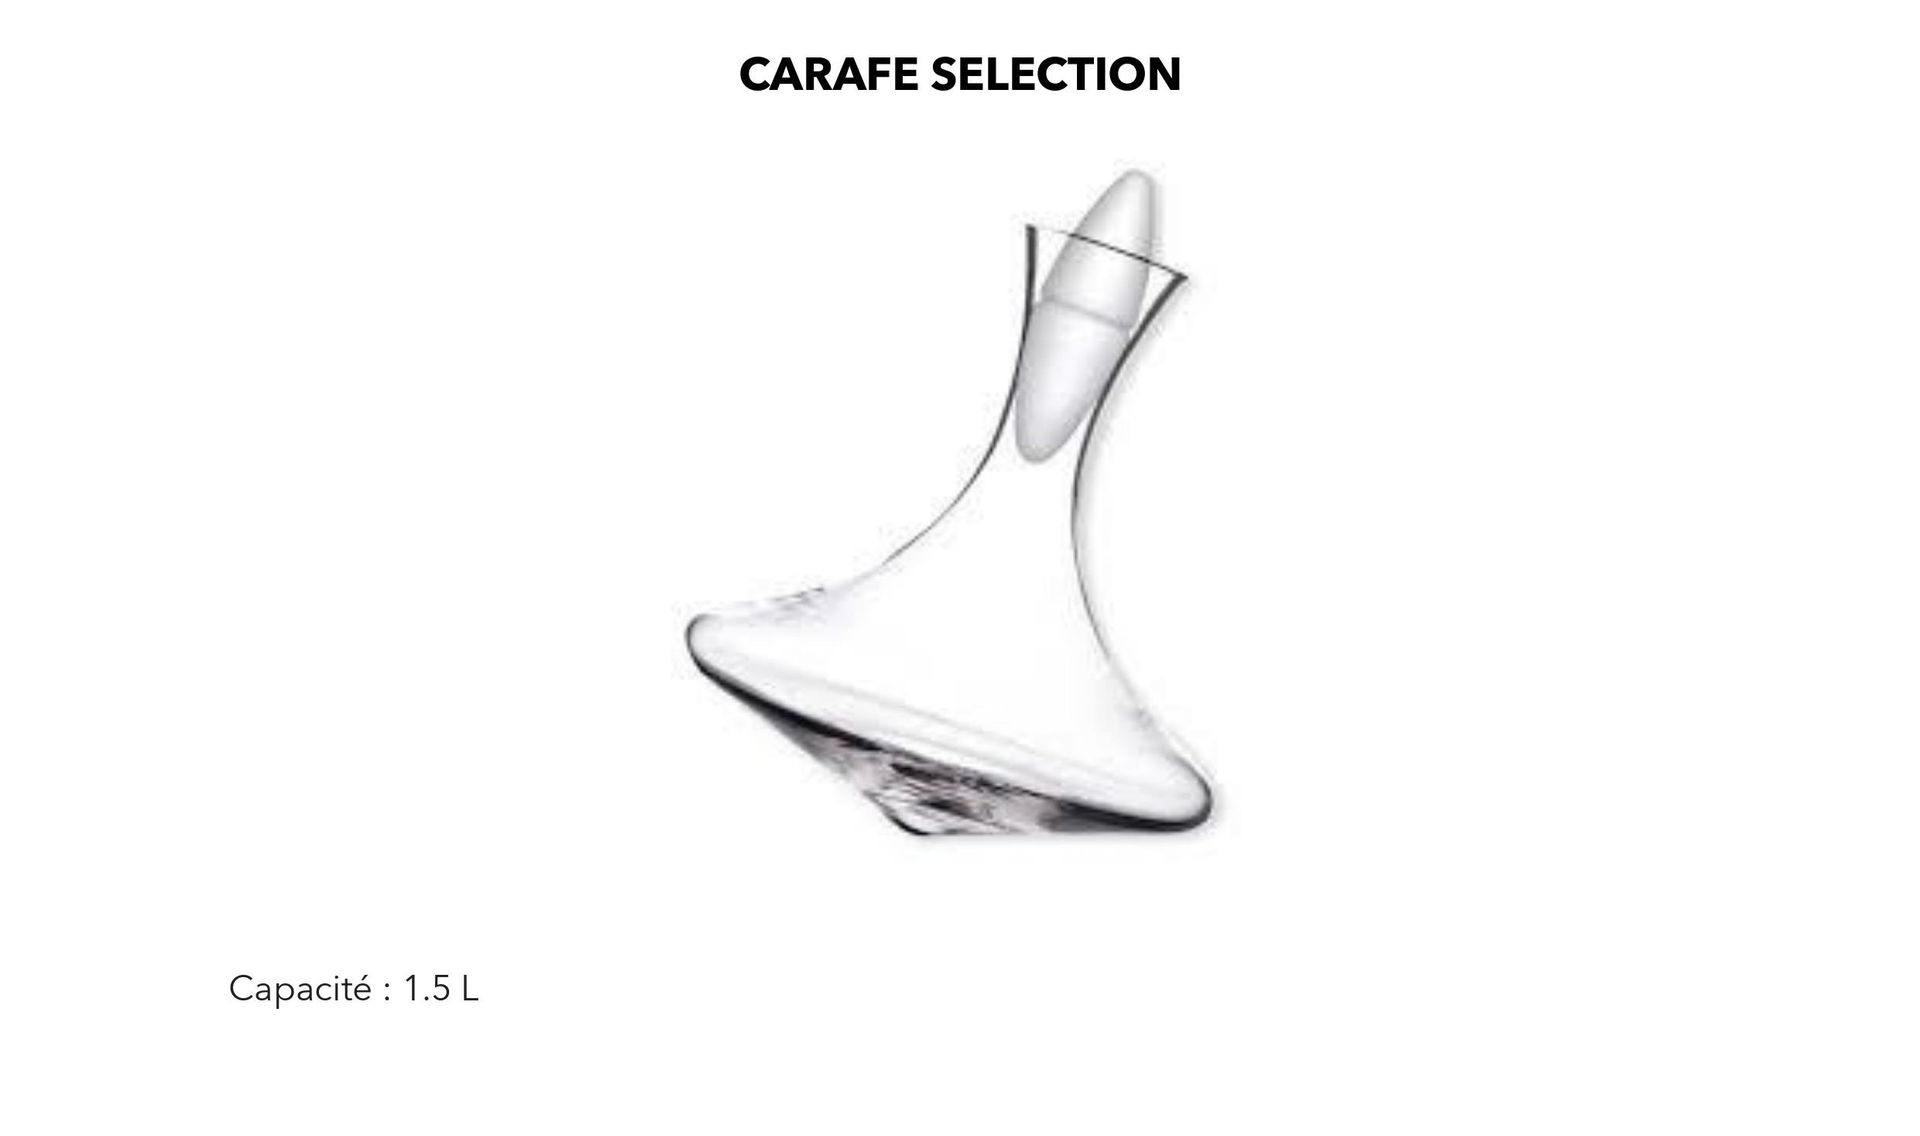 Carafe Selection (Capacité 1.5L) x 2 unités mise à prix 60€